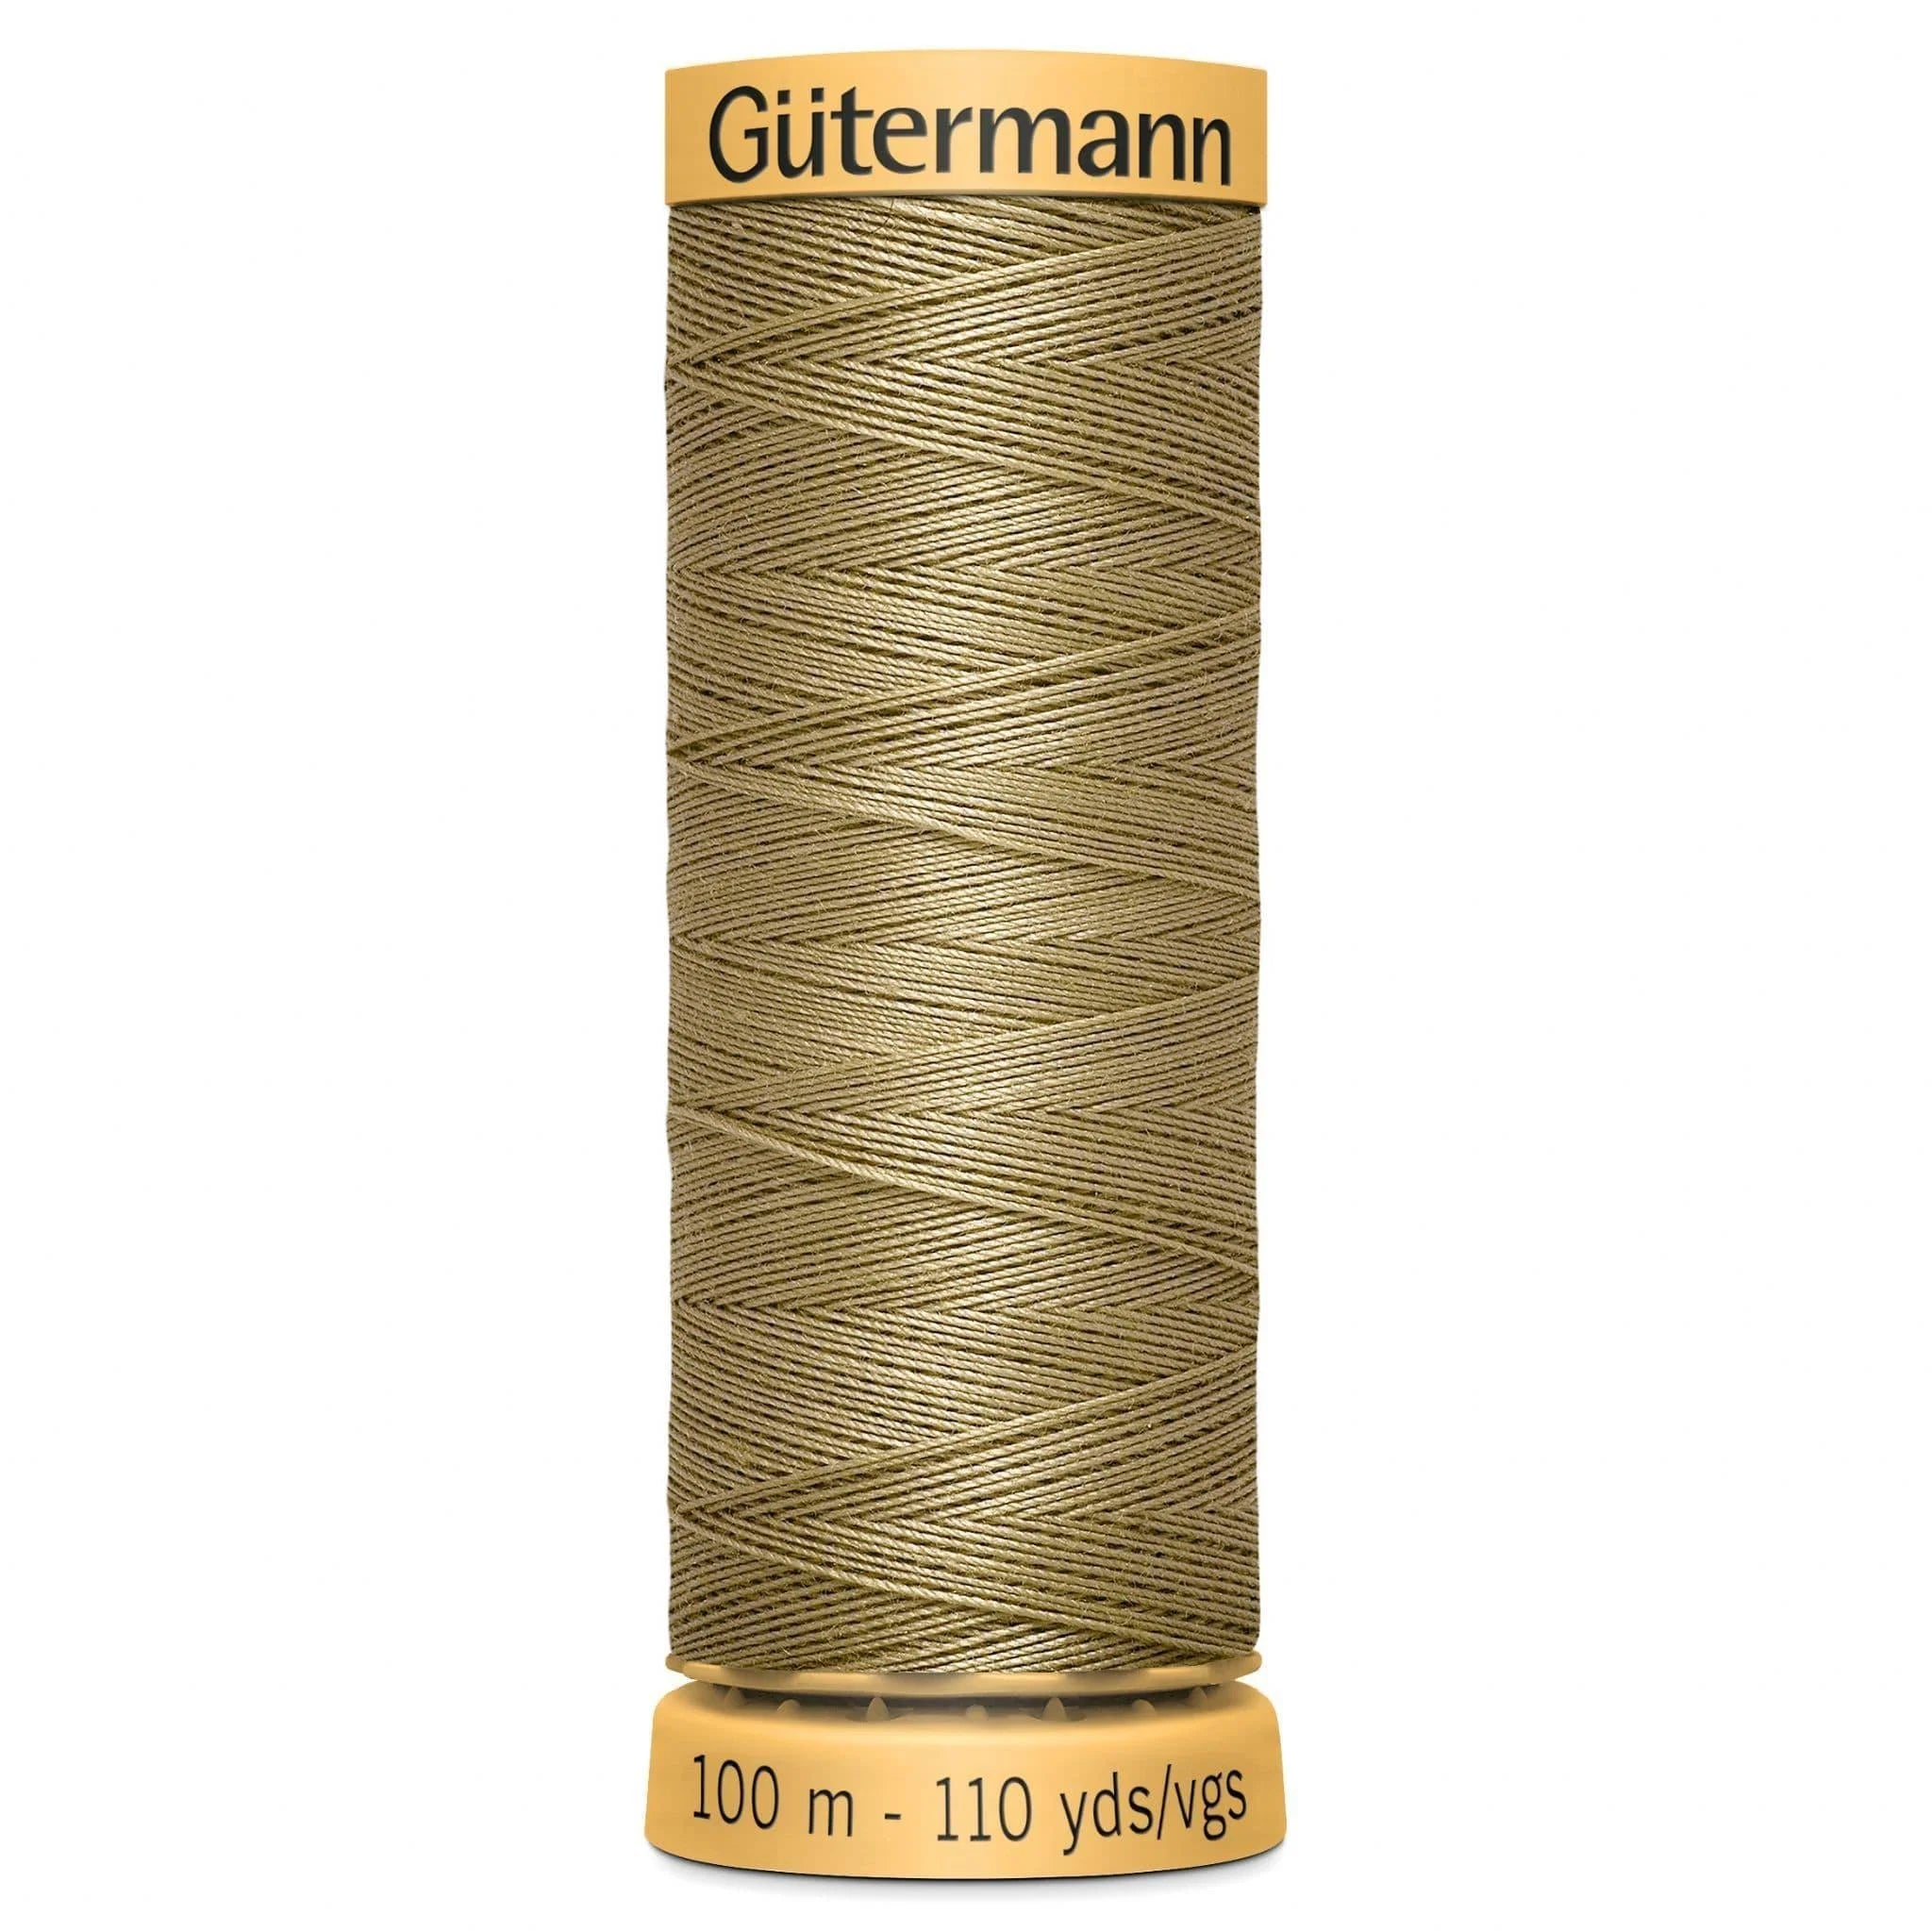 1026 Gutermann Natural Cotton Thread 100m - Dark Magnolia